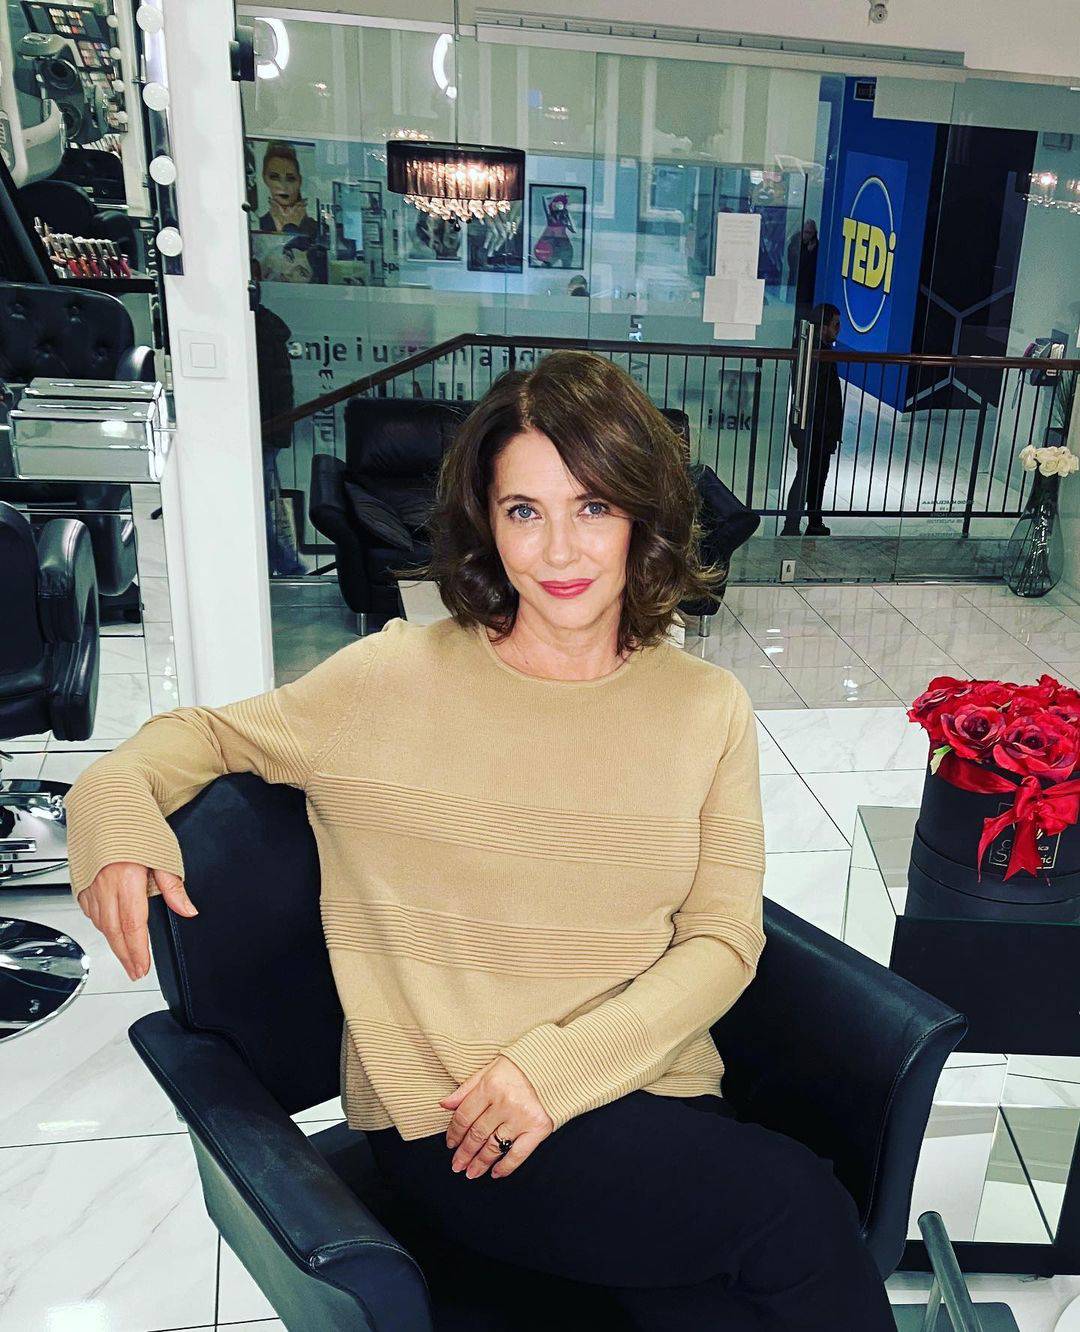 Novi imidž za kraj godine, Sanja Vejnović drastično promijenila frizuru: 'Kao curica, divna si!'